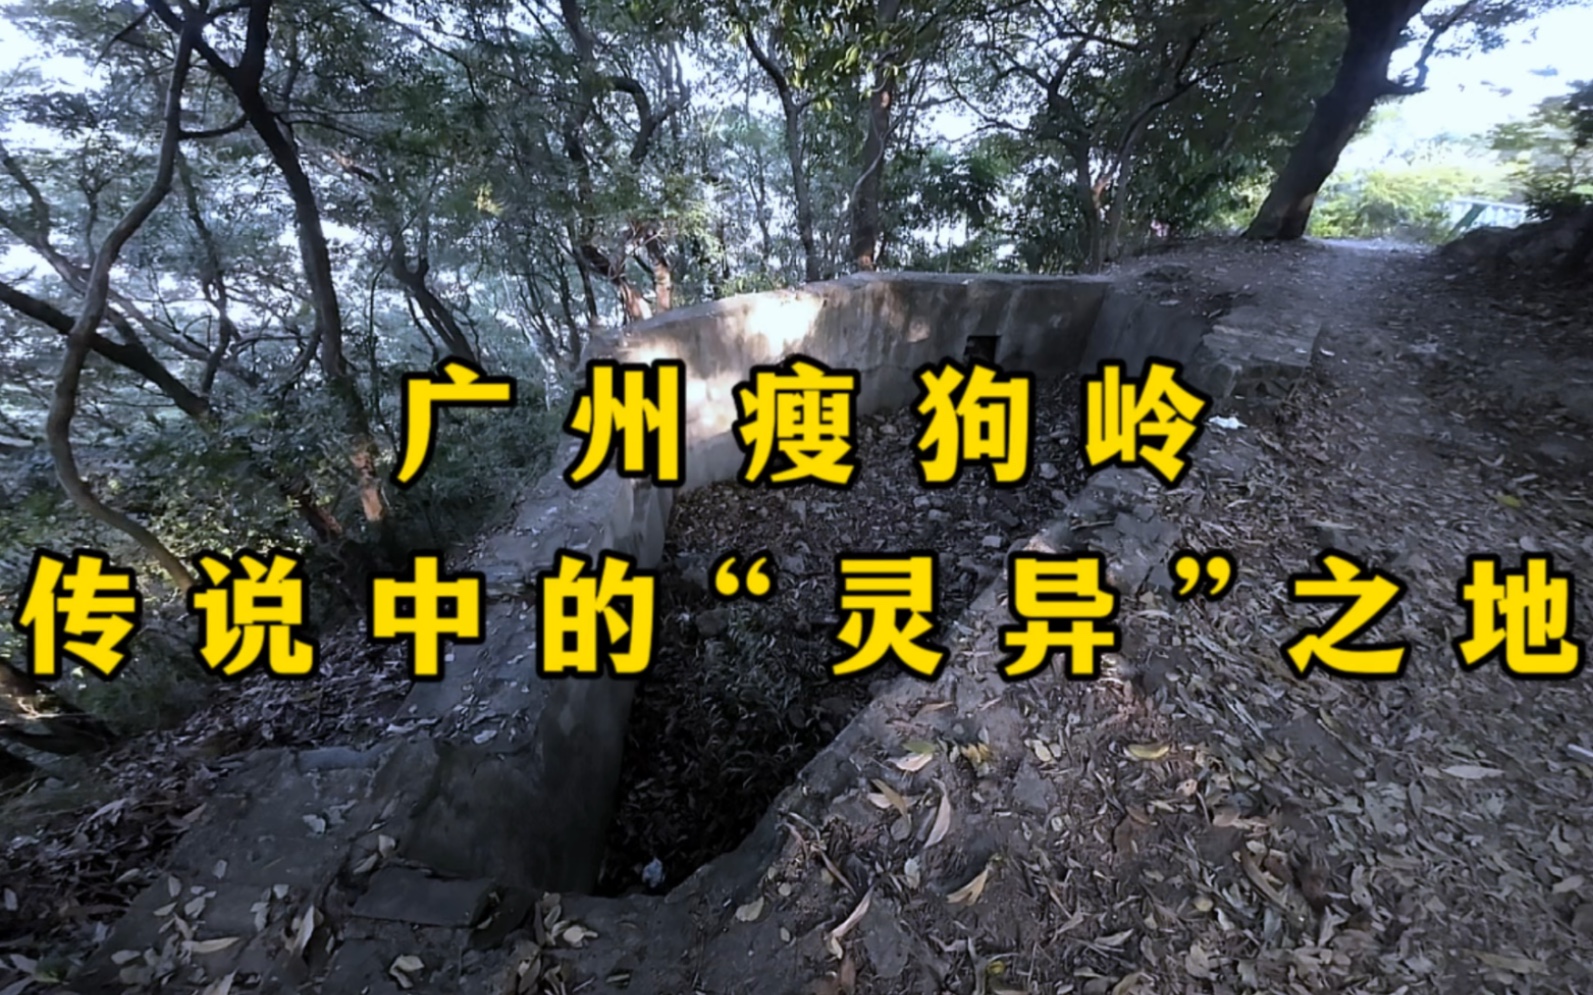 广州瘦狗岭,传说中的"灵异"之地